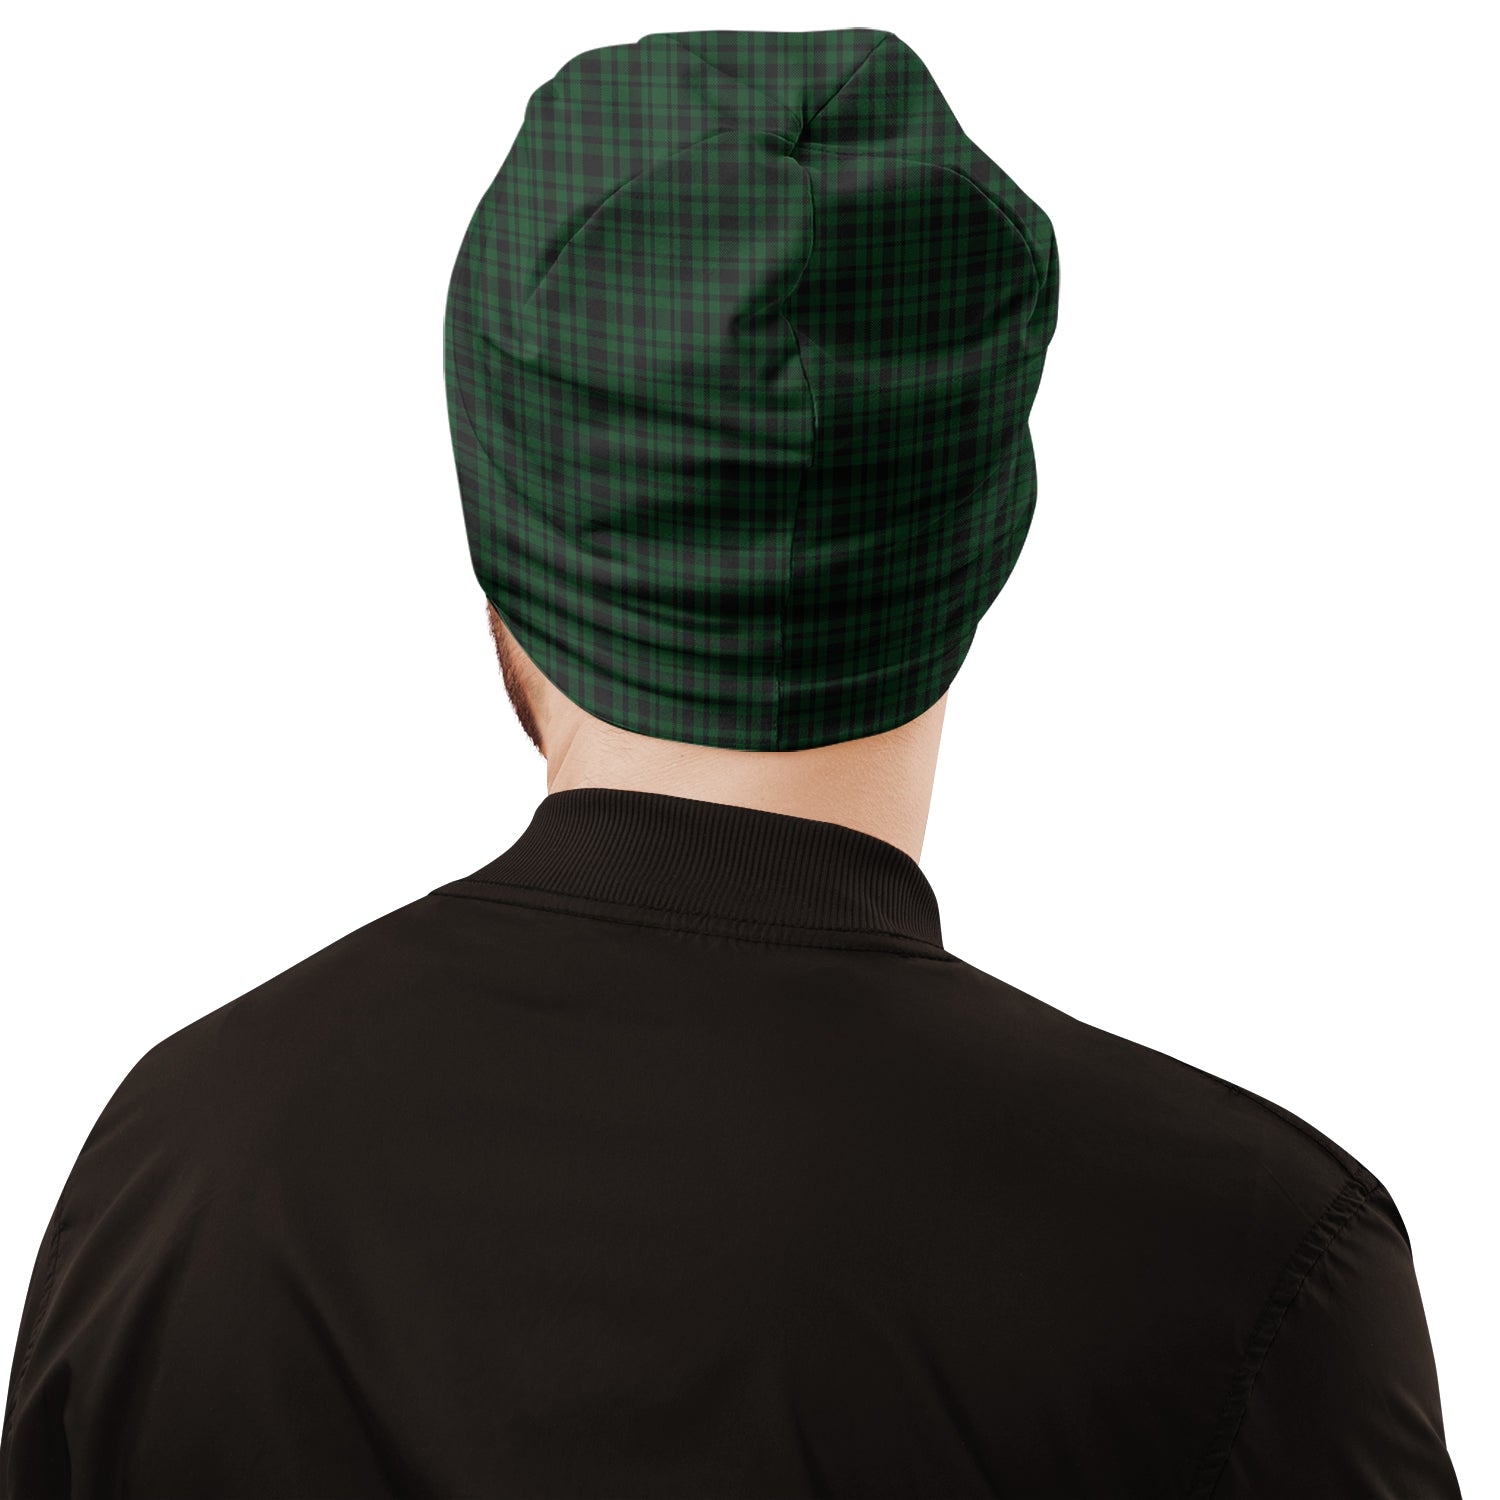 menzies-green-tartan-beanies-hat